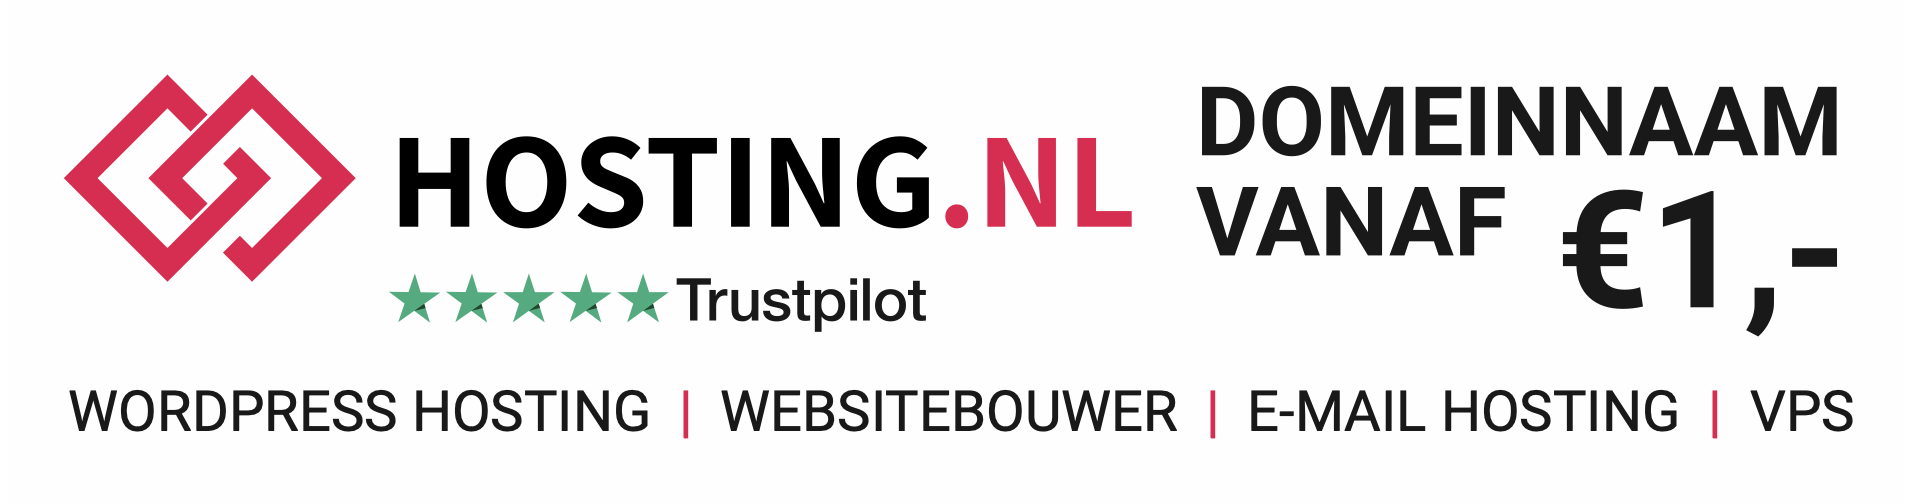 Banner Hosting.NL